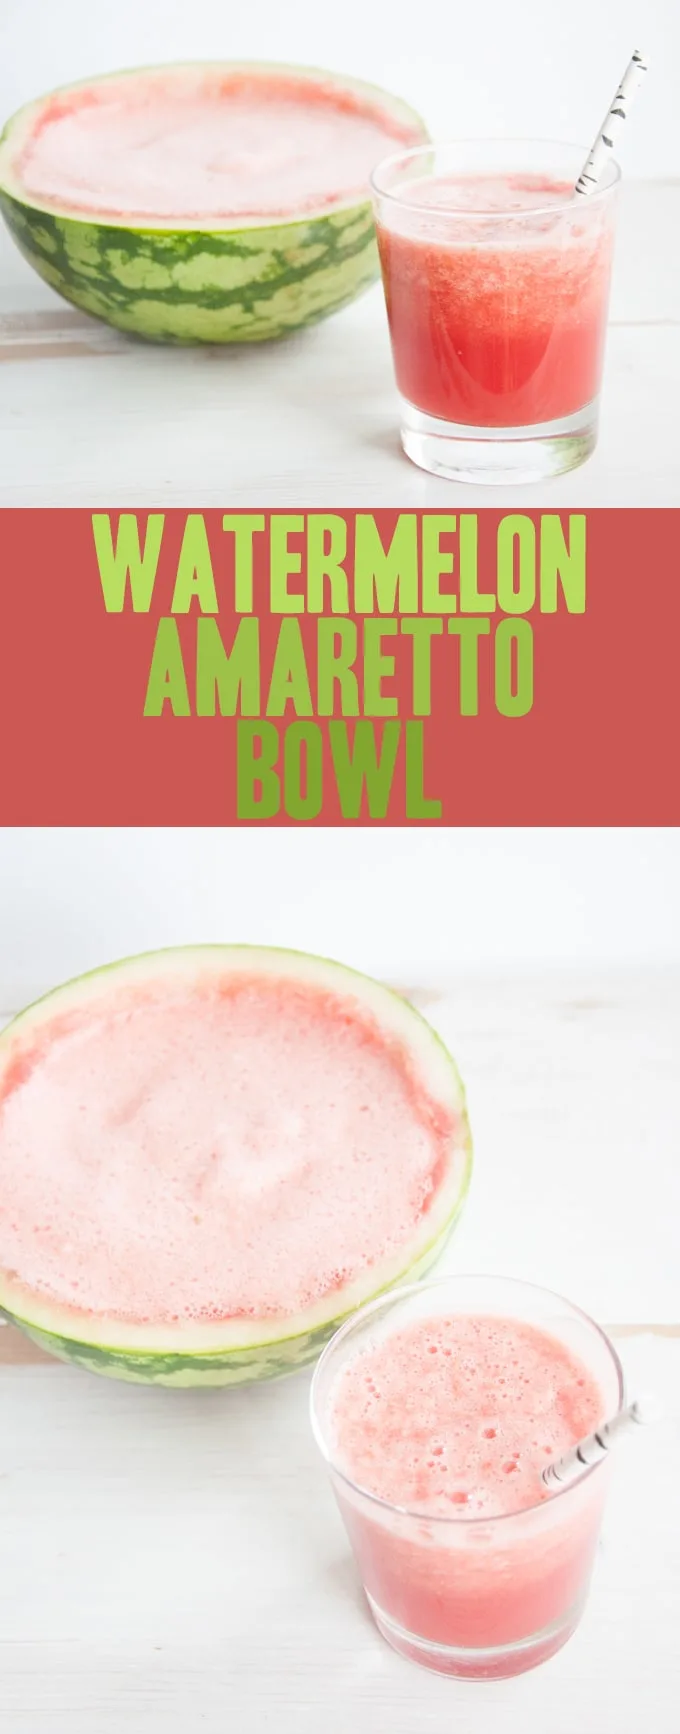 Watermelon Amaretto Bowl